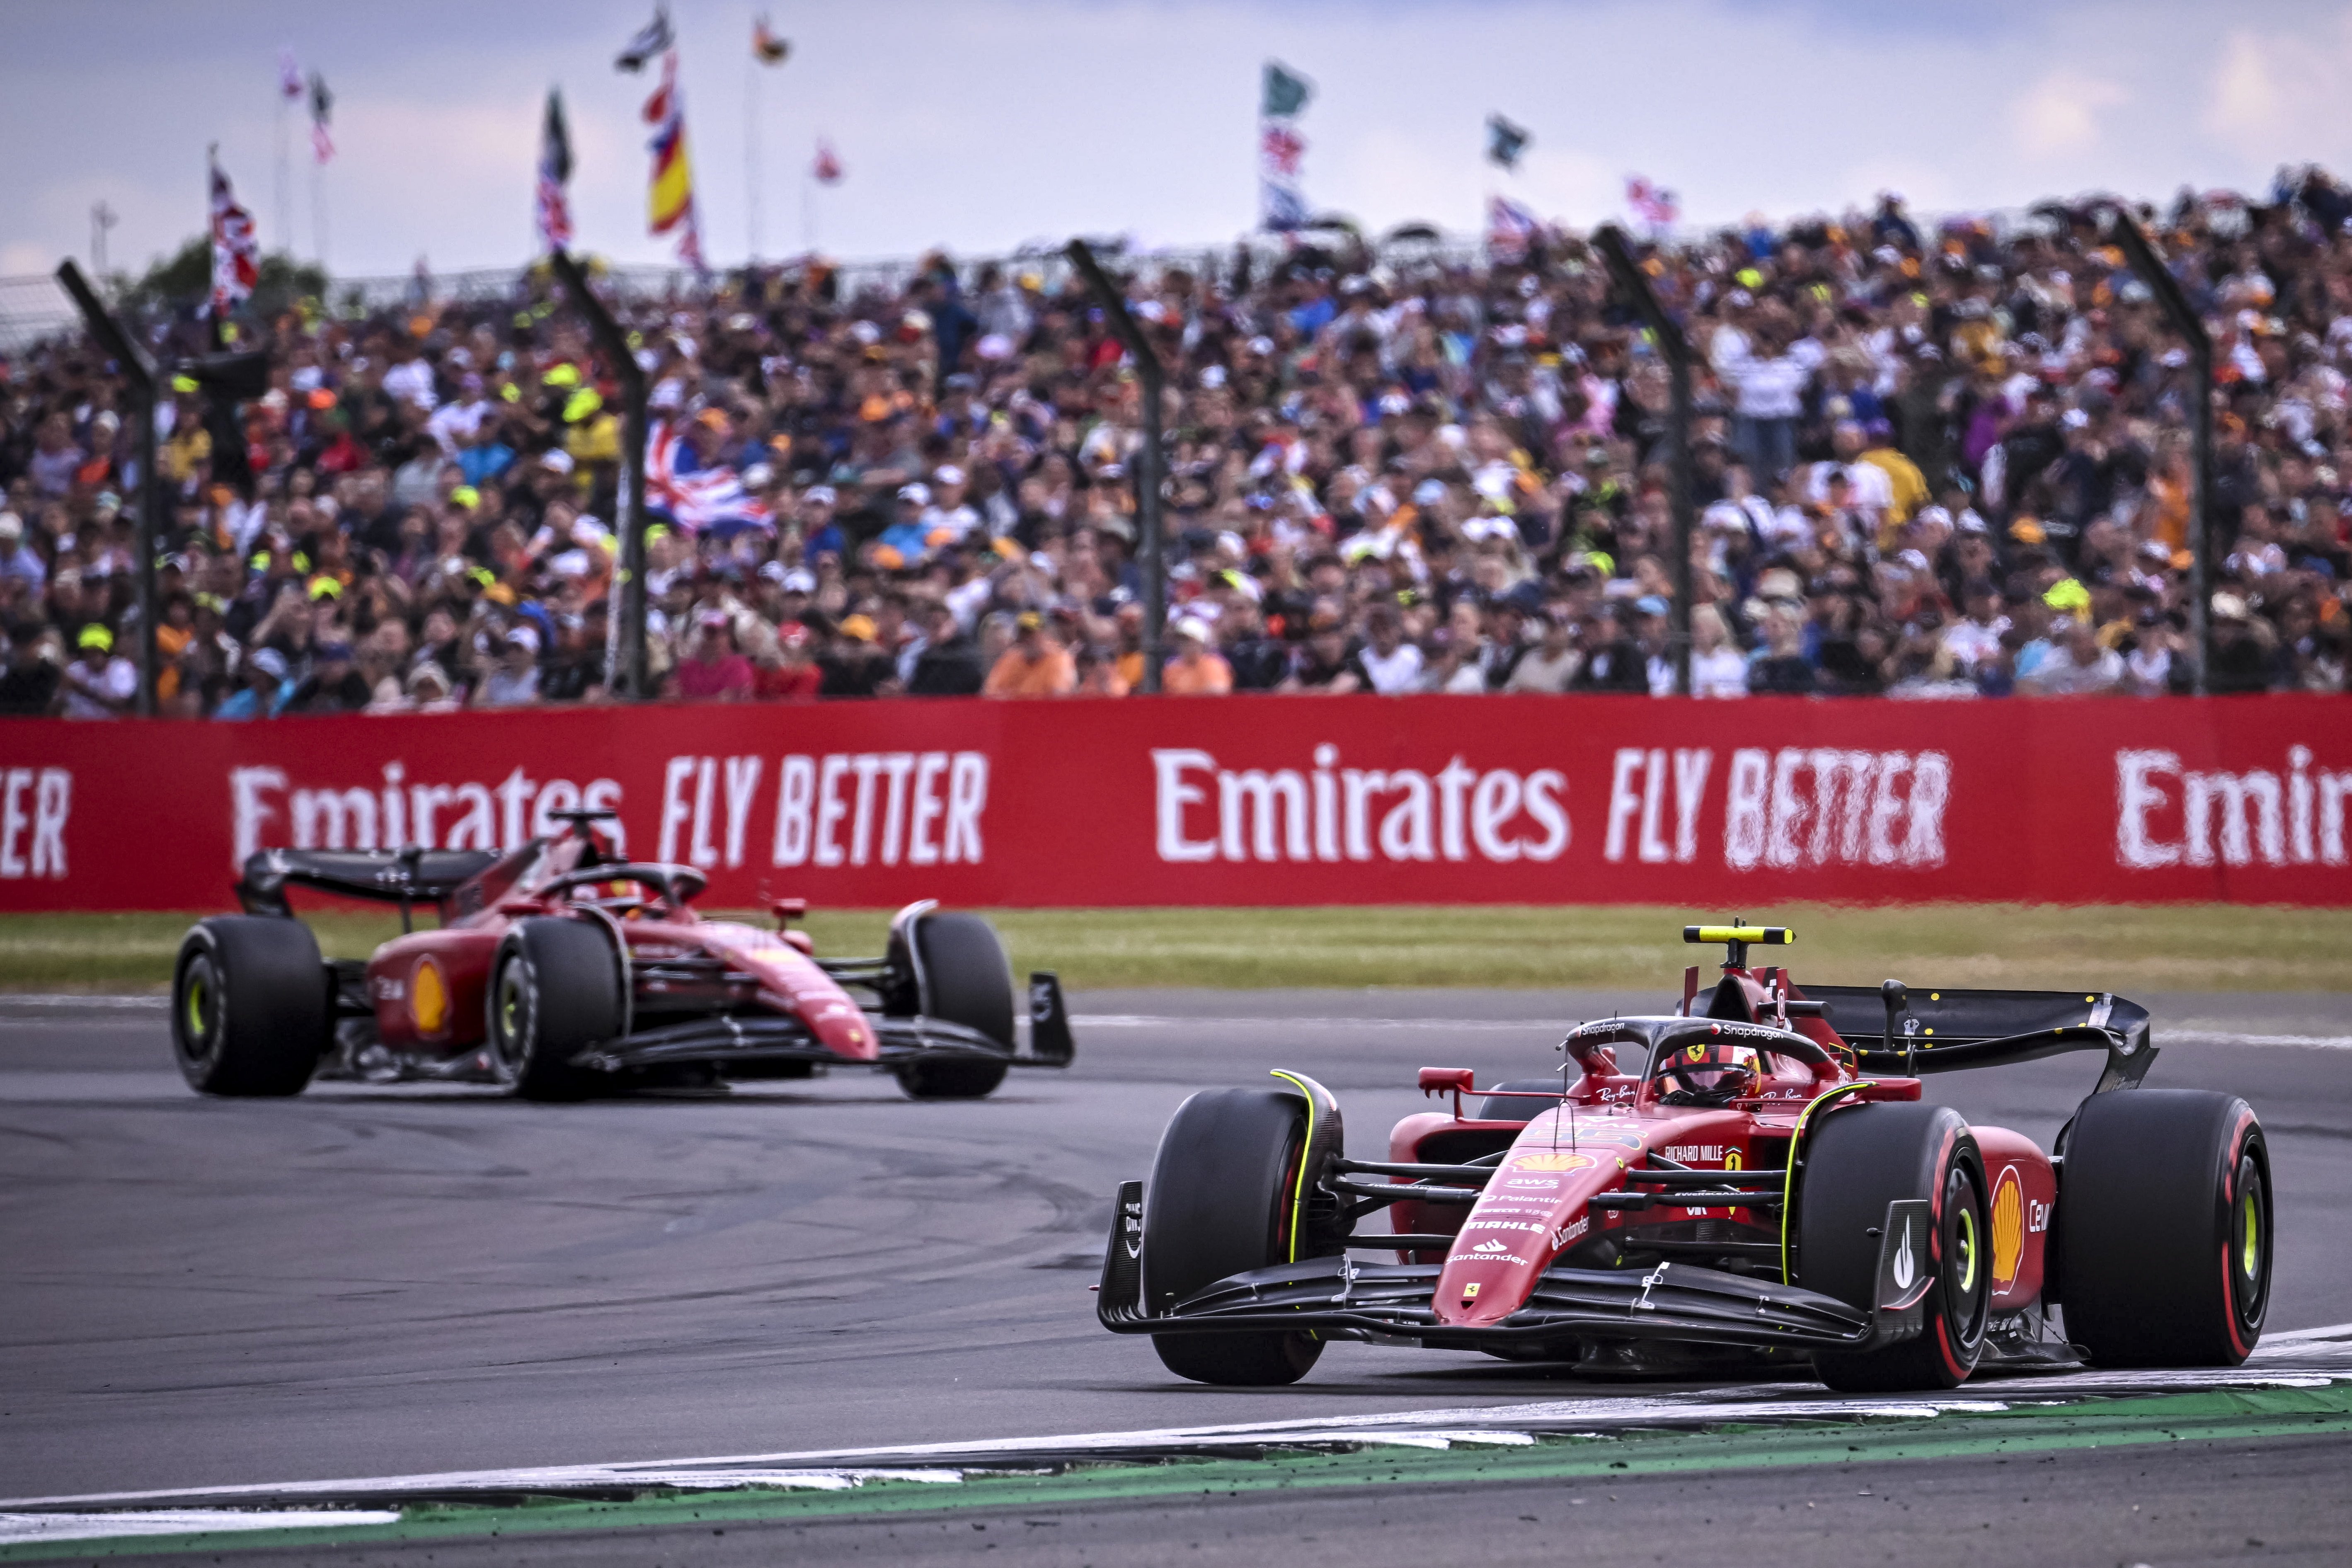 Carlos Sainz aconsegueix la seva primera victòria  a la Fórmula 1 en una espectacular cursa a Anglaterra